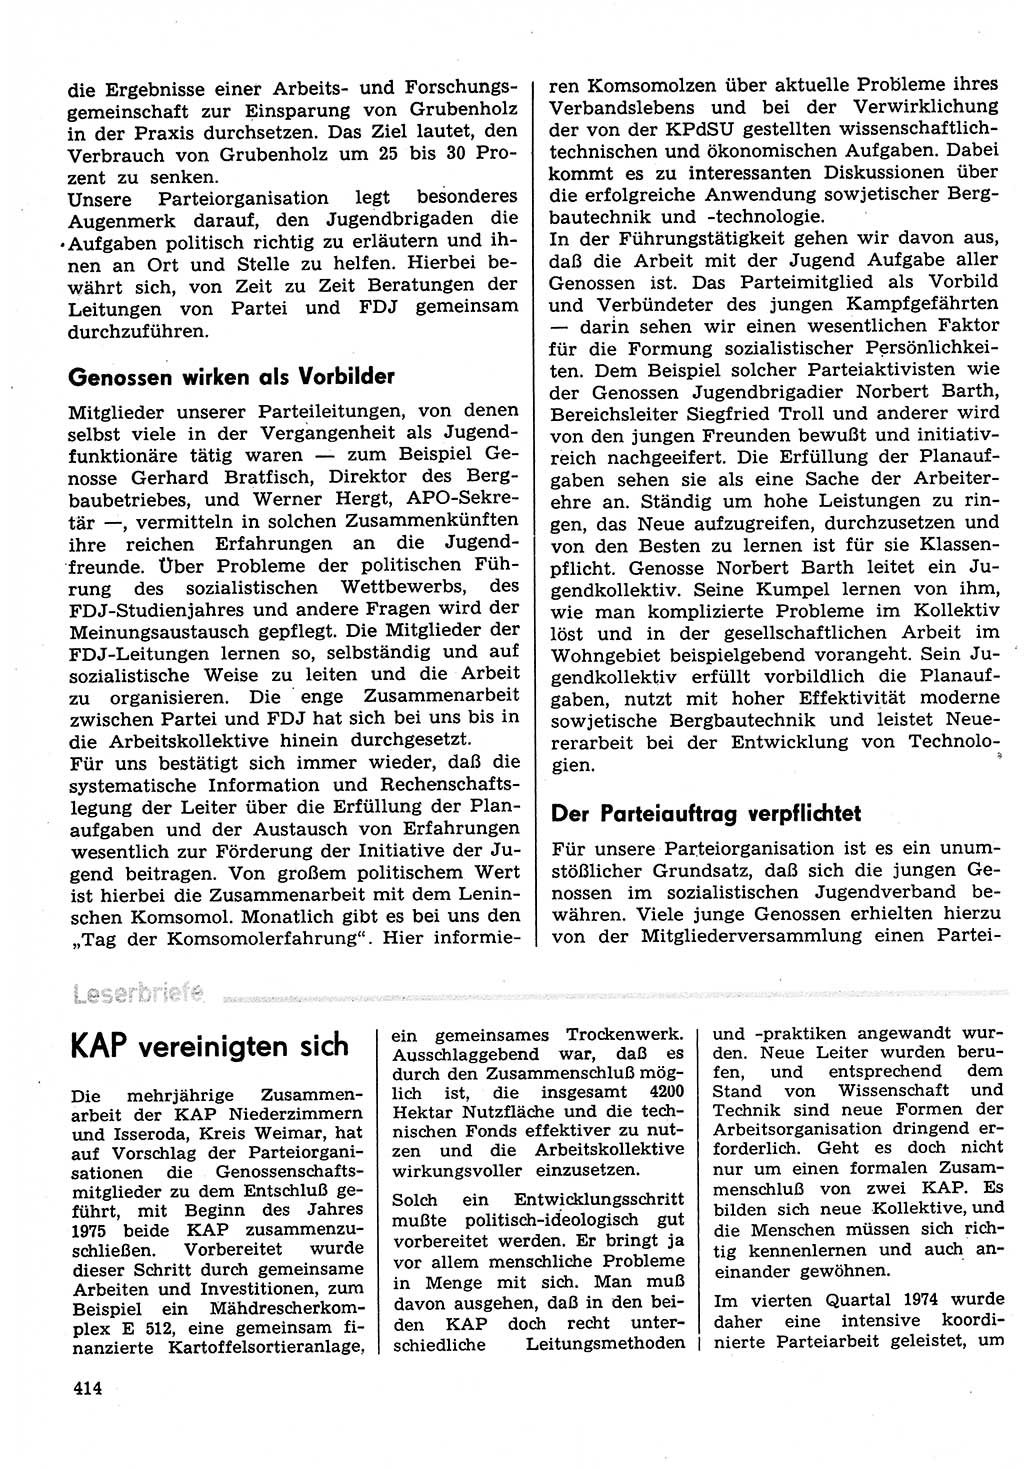 Neuer Weg (NW), Organ des Zentralkomitees (ZK) der SED (Sozialistische Einheitspartei Deutschlands) für Fragen des Parteilebens, 30. Jahrgang [Deutsche Demokratische Republik (DDR)] 1975, Seite 414 (NW ZK SED DDR 1975, S. 414)